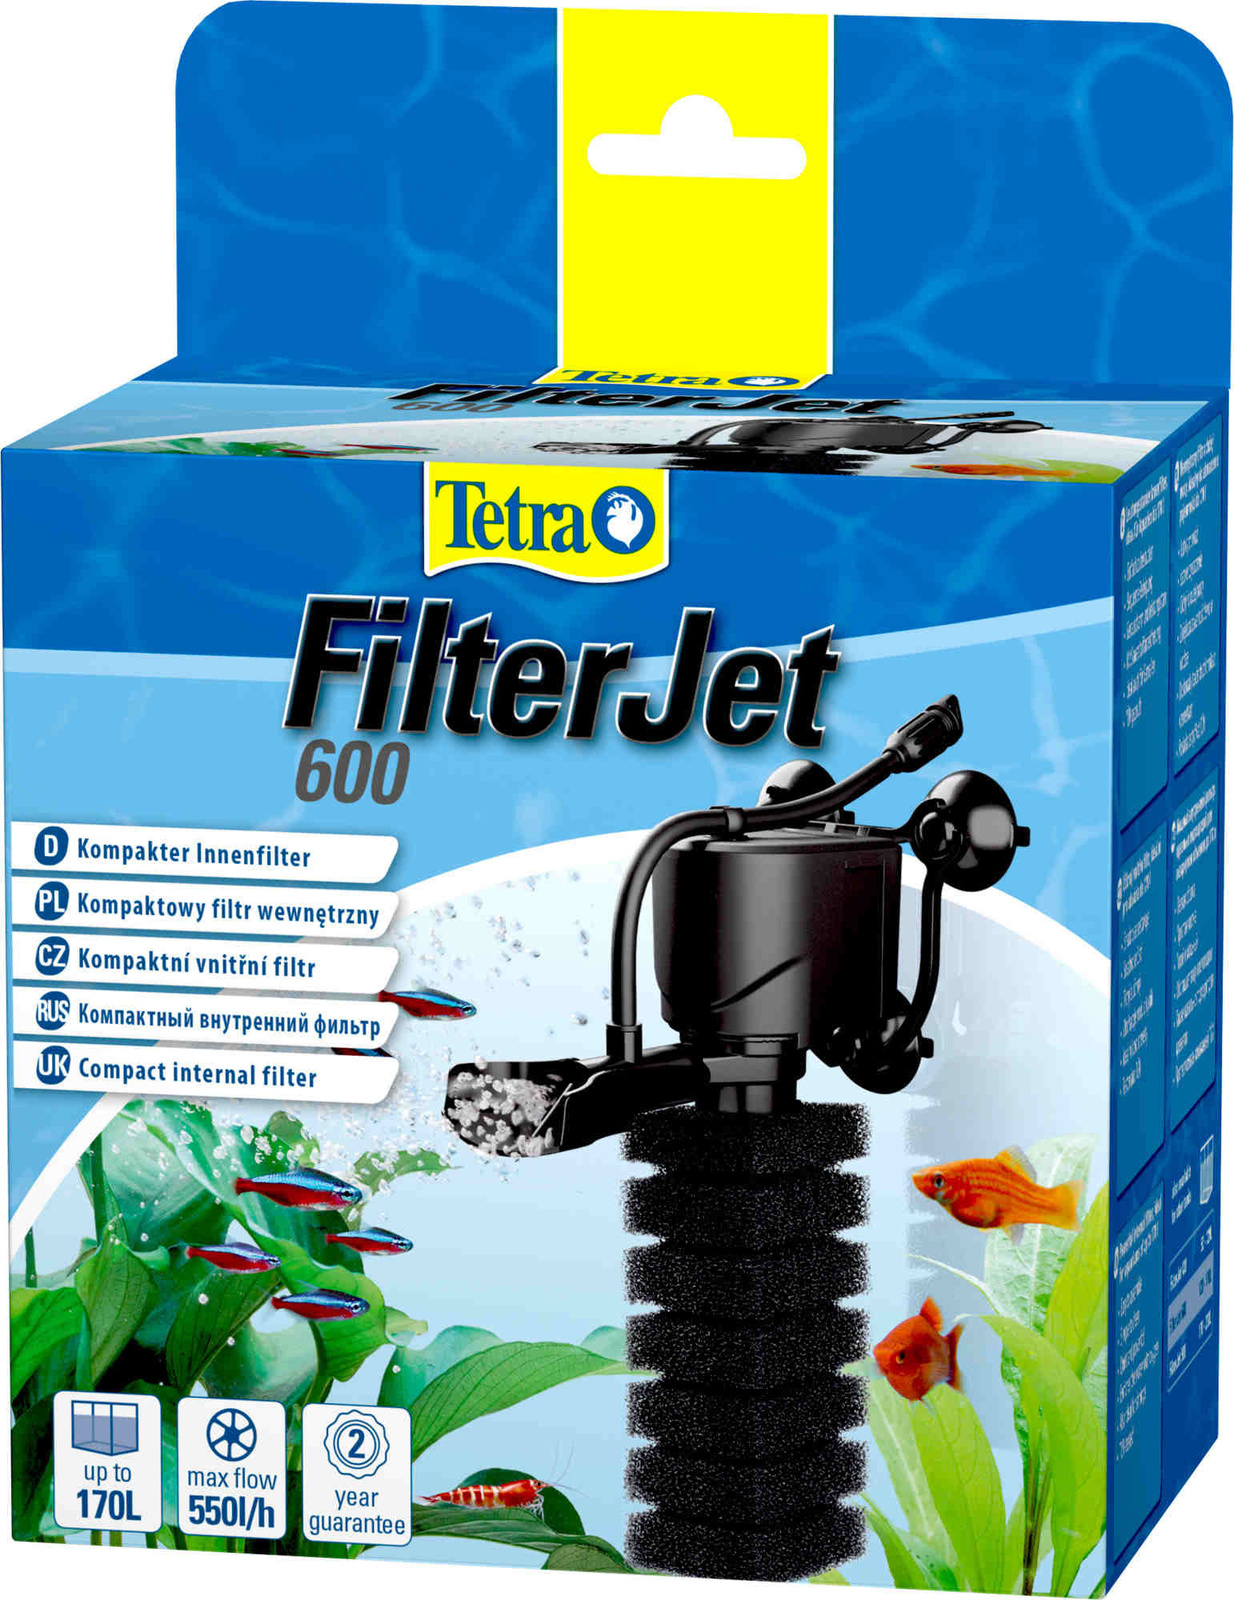 Tetra (оборудование) внутренний фильтр FilterJet 600, для аквариумов объемом 120–170л (470 г) Tetra (оборудование) внутренний фильтр FilterJet 600, для аквариумов объемом 120–170л (470 г) - фото 1